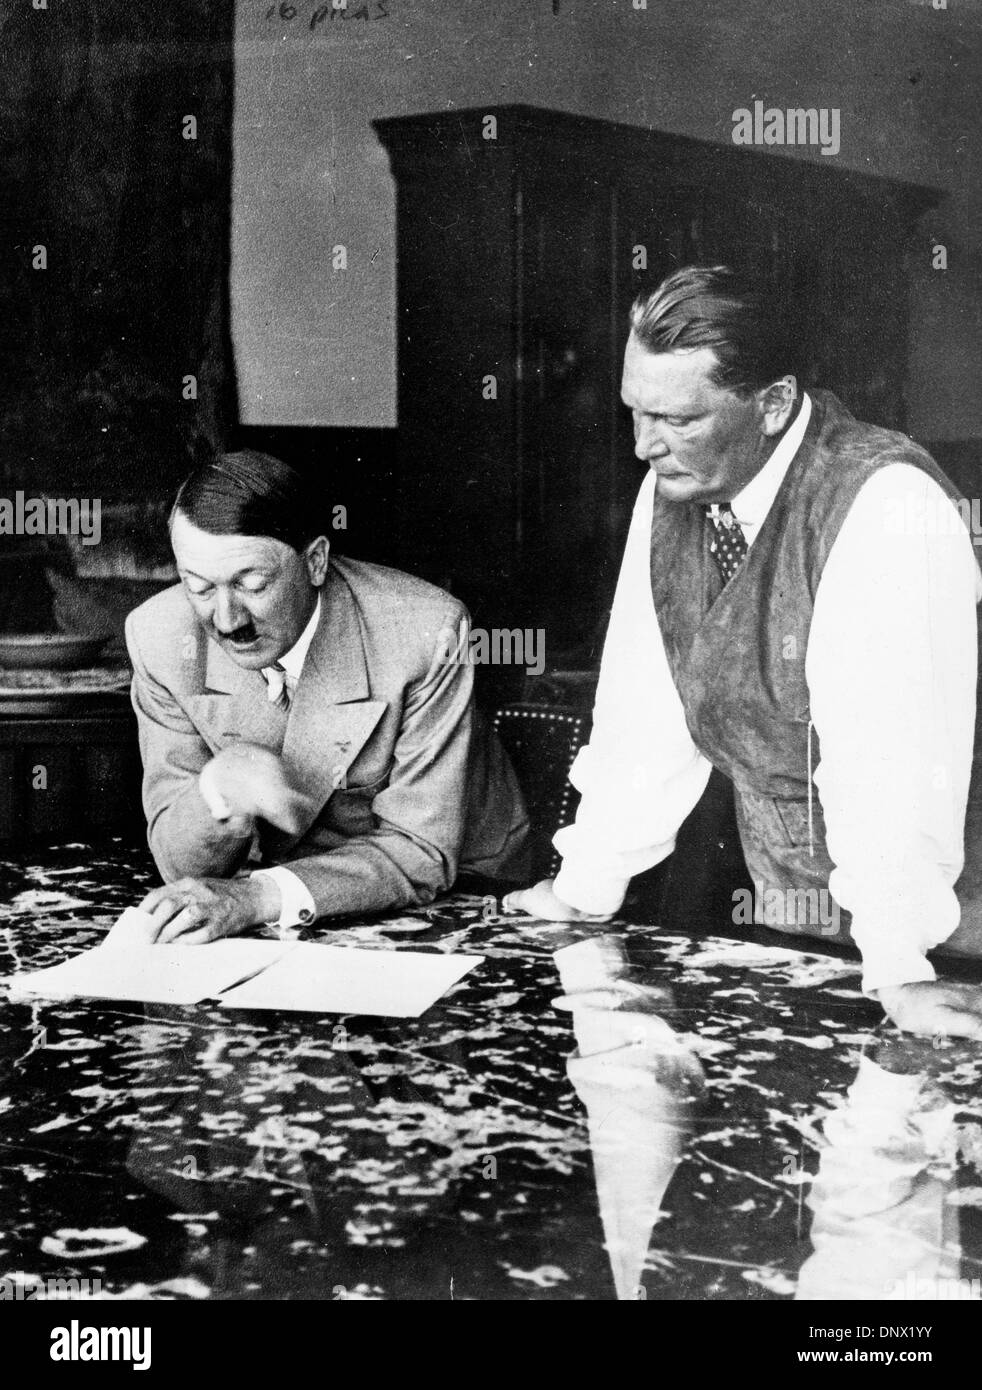 Giugno 15, 1937 - Berlino, Germania - ADOLF HITLER e Hermann Goering, fondatore della Gestapo. Adolf Hitler (20 Aprile 1889ÐApril 30, 1945) è stato il Führer und Reichskanzler (Leader e il cancelliere imperiale) della Repubblica federale di Germania dal 1933 fino alla sua morte. Egli era il leader della nazionale socialista tedesco Partito dei Lavoratori (NSDAP), meglio conosciuto come il partito nazista. Al culmine della sua potenza, gli eserciti di Na Foto Stock